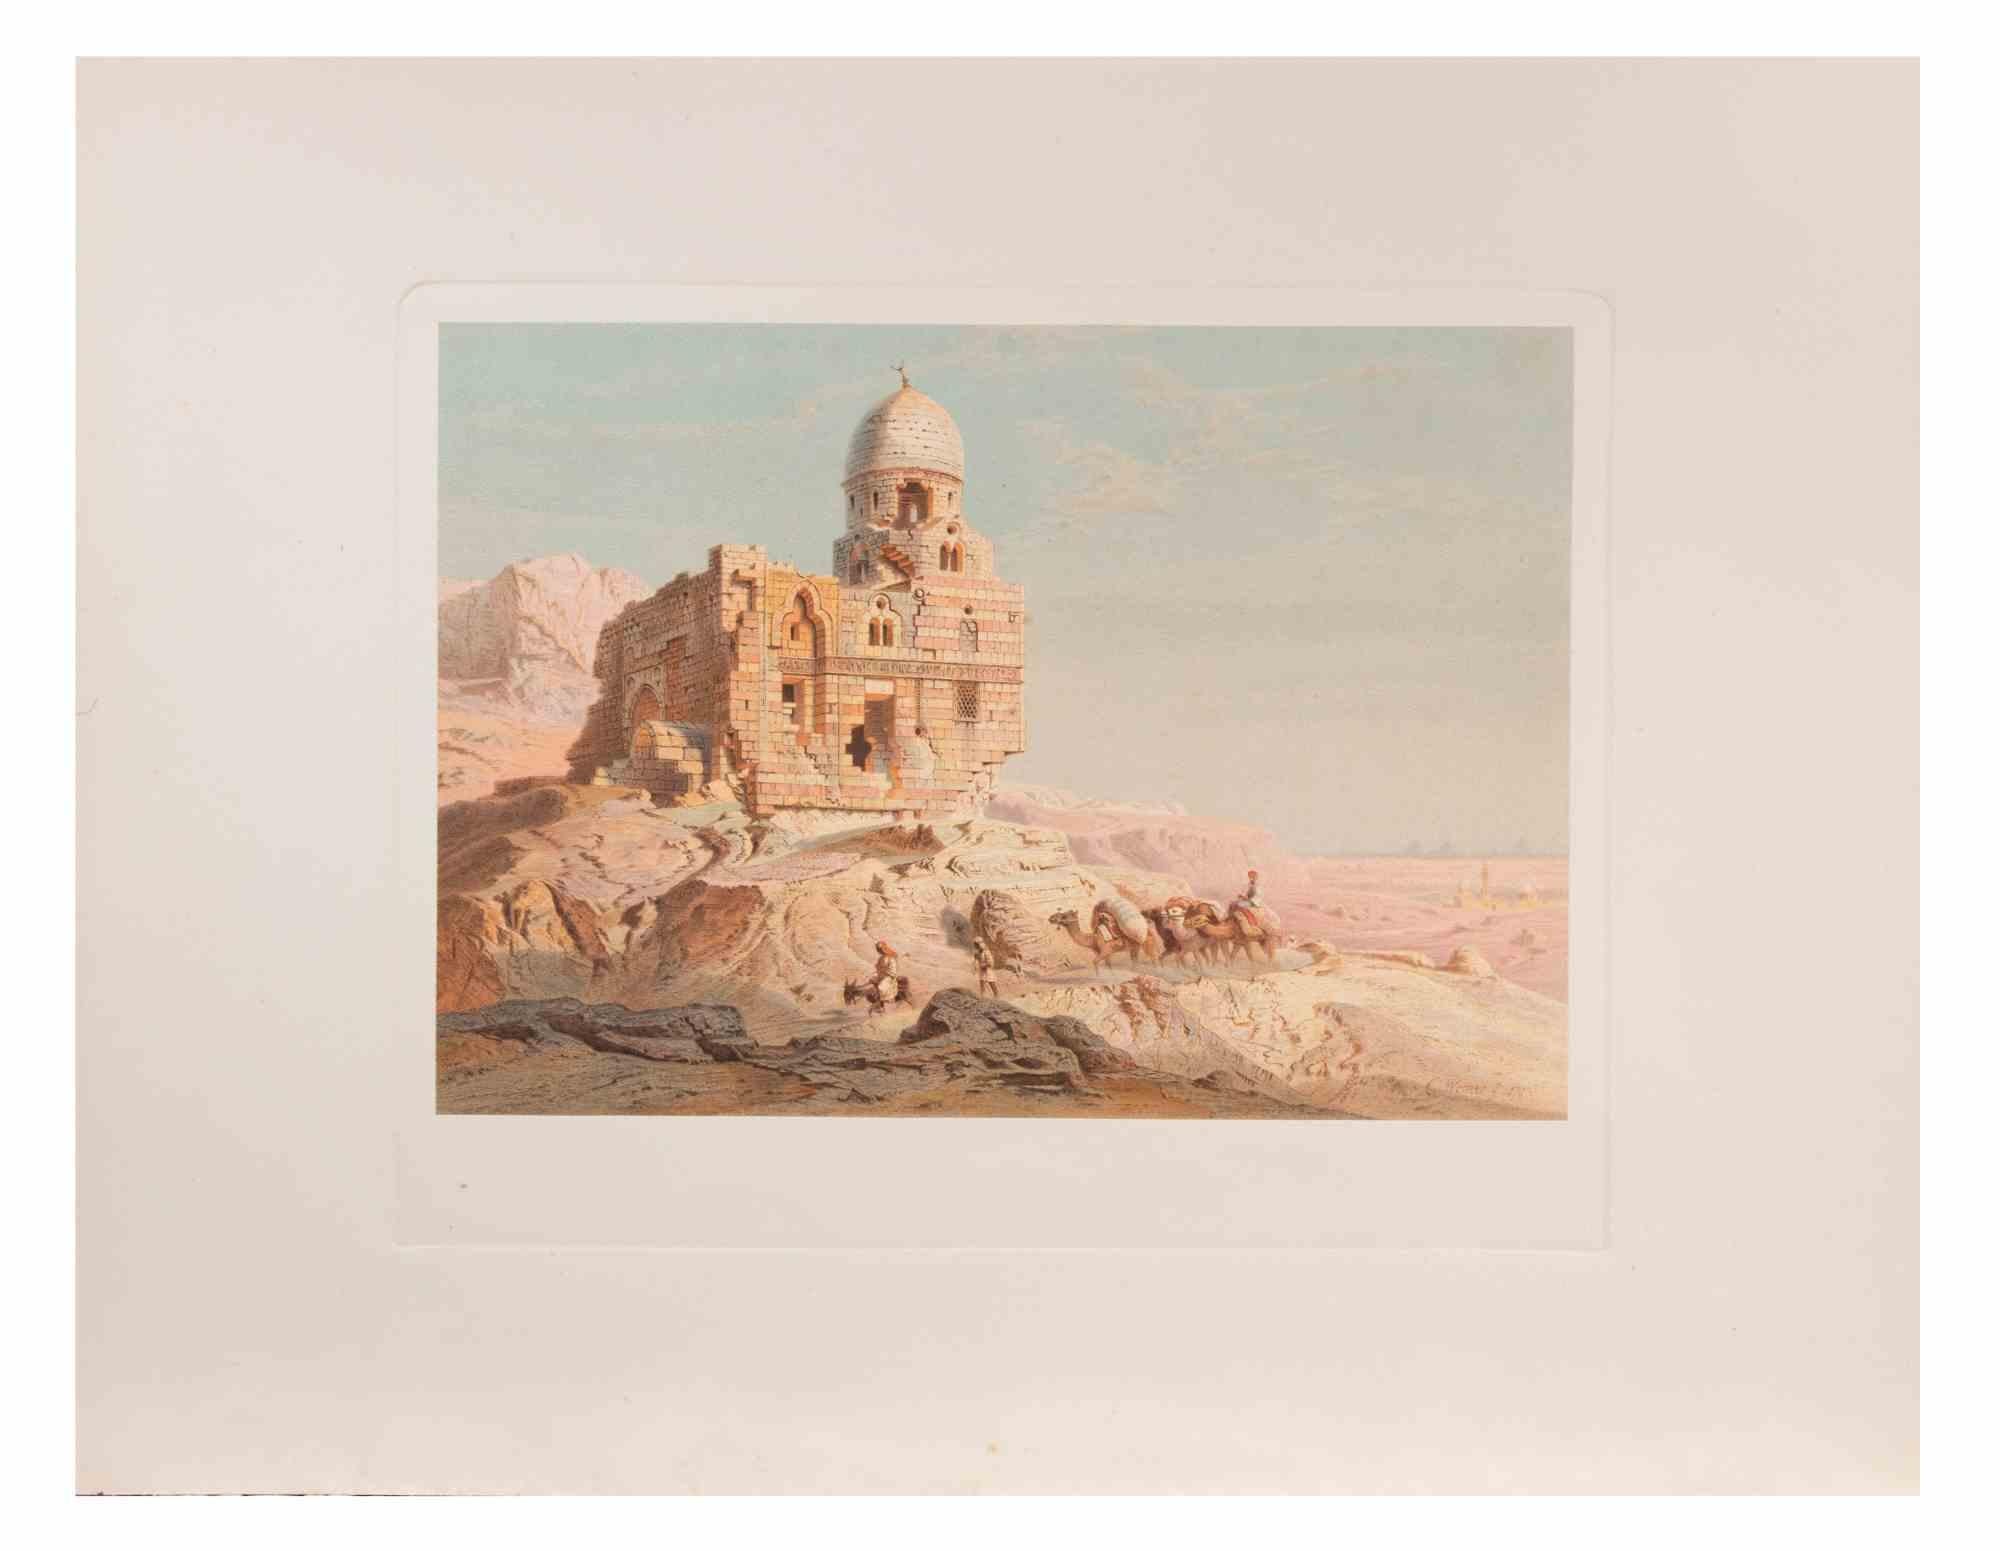 Les ruines de l'Égypte ancienne sont une œuvre d'art moderne réalisée d'après Karl Werner.

Cromolithographie en couleurs mixtes. 

L'œuvre est d'après les aquarelles réalisées par l'artiste lors d'un voyage en Égypte entre 1862 et 1865.

Cette